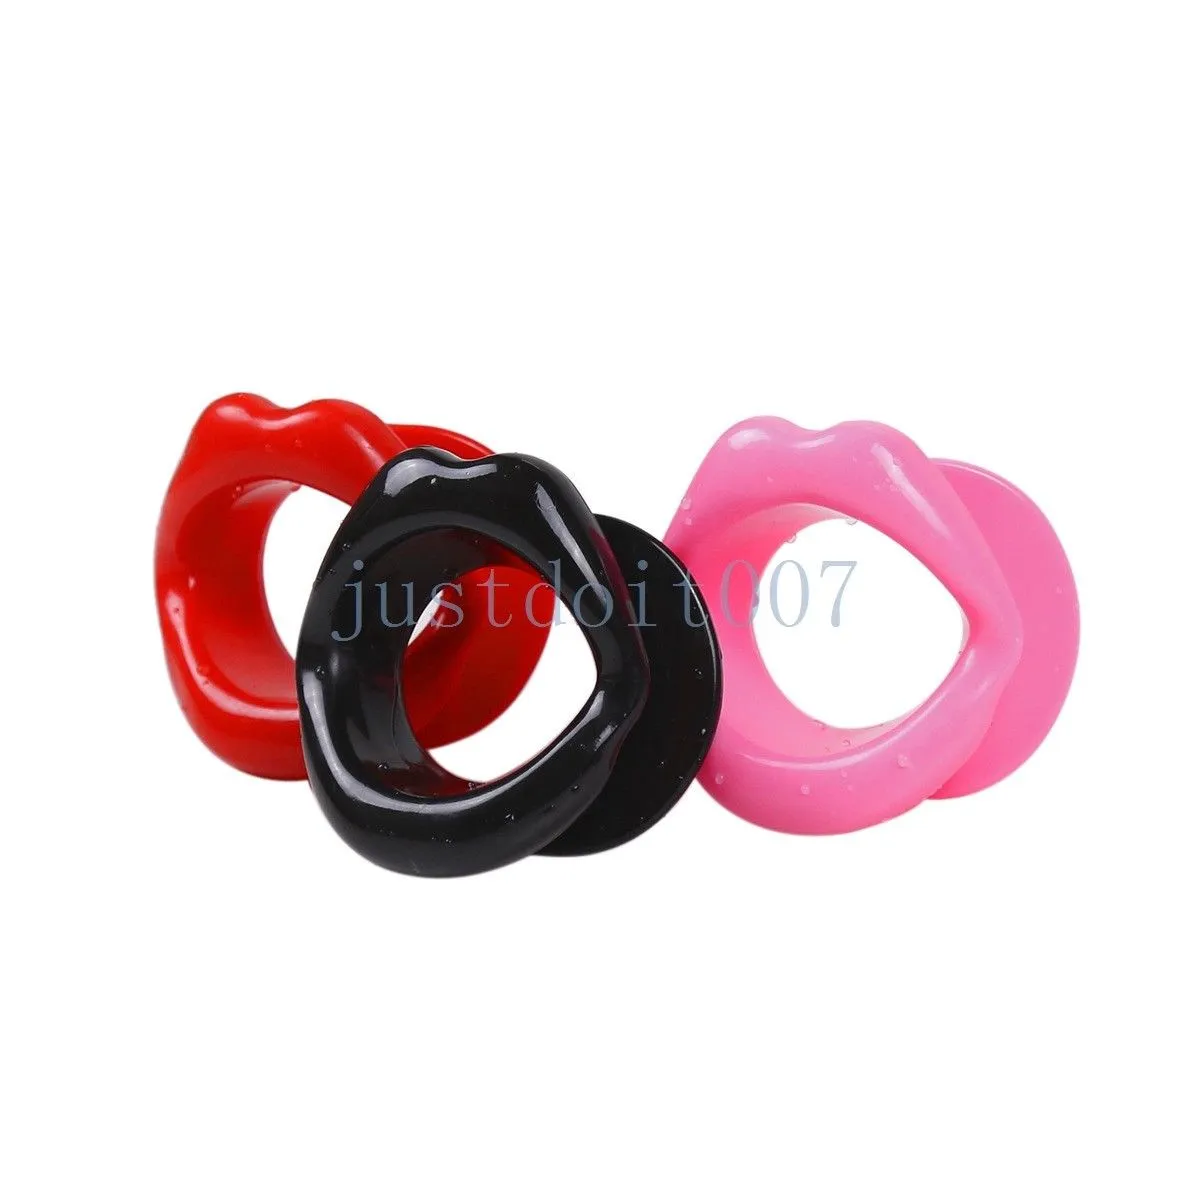 Bondage Sexy Silicone Labbra rosse Bocca aperta Gag Ring Harness morbido gioco di ruolo Restraint Sissy #E94